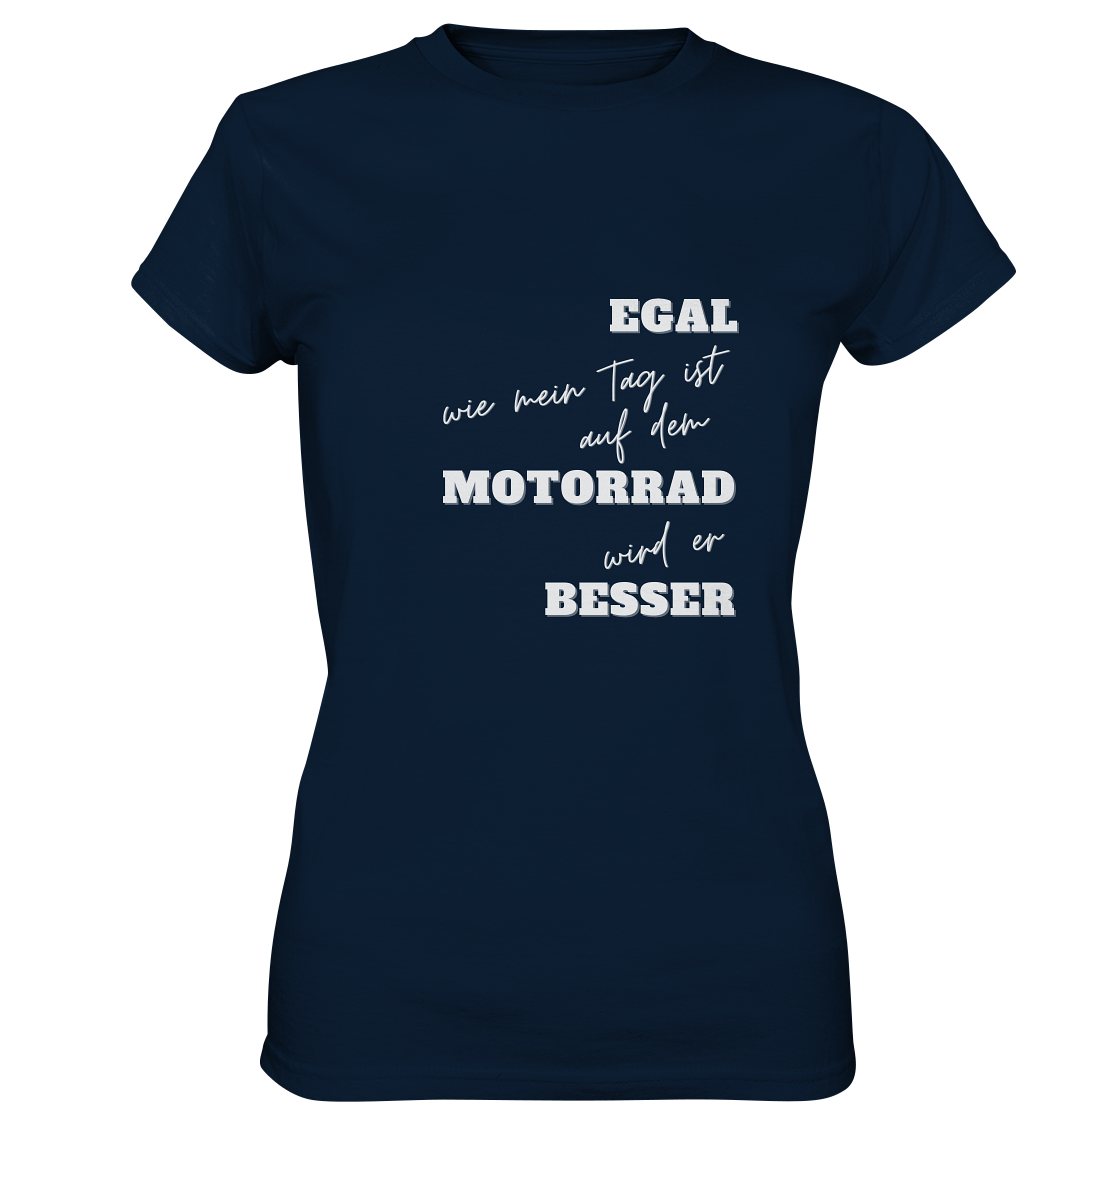 Damen Premium Motorrad-T-Shirt mit weißem Aufdruck: "Egal, wie mein Tag ist, auf dem Motorrad wird er besser" | dunkel blau